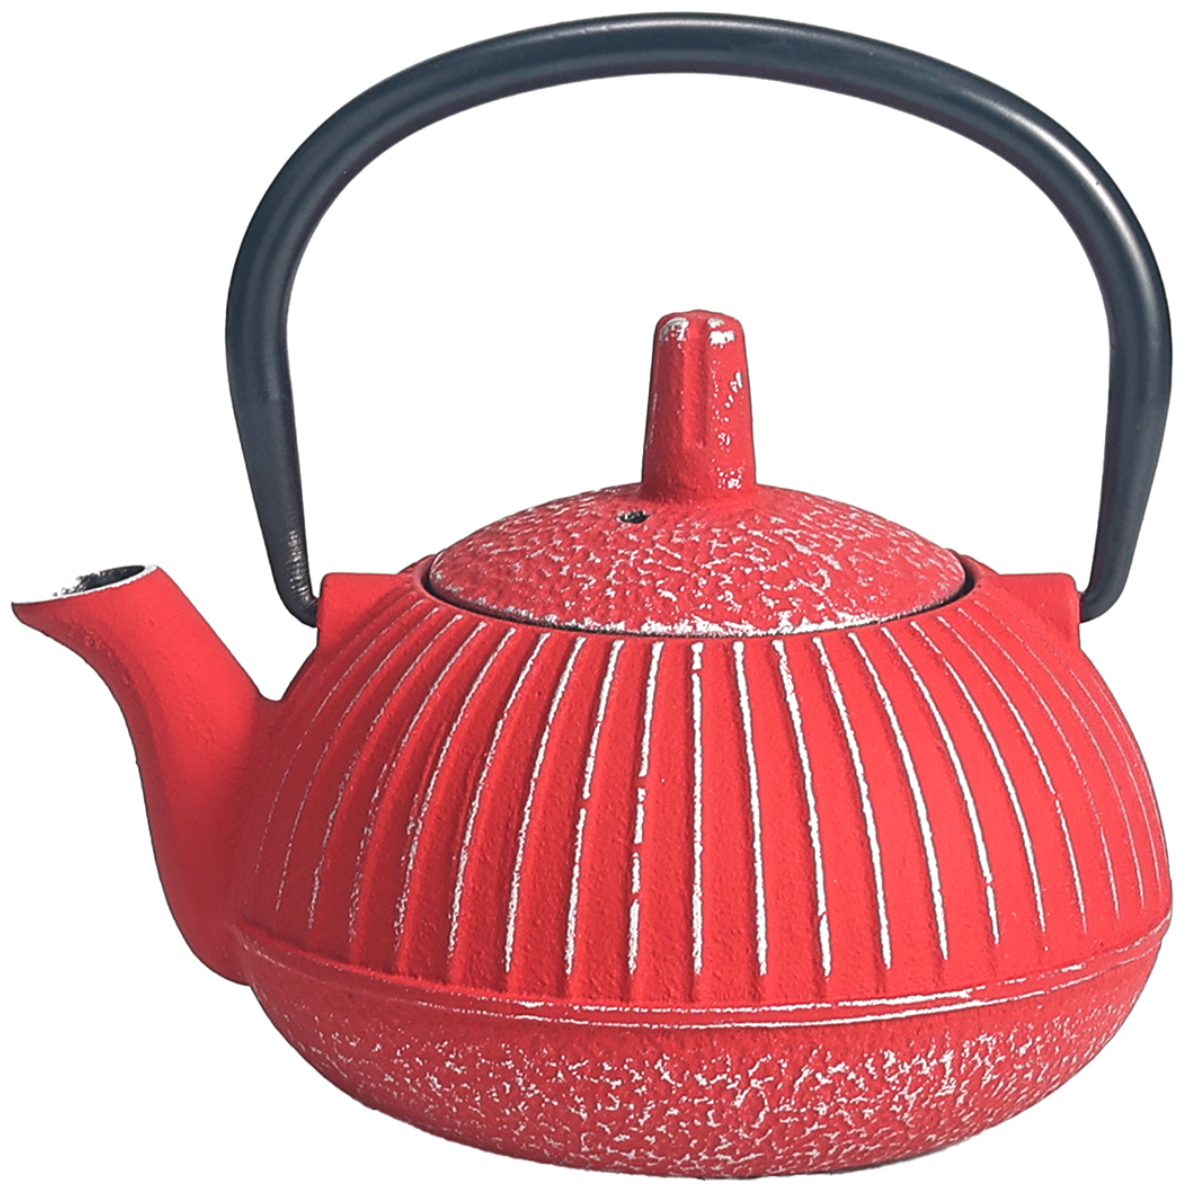 Japanese style cast iron teapot 0.3 liter